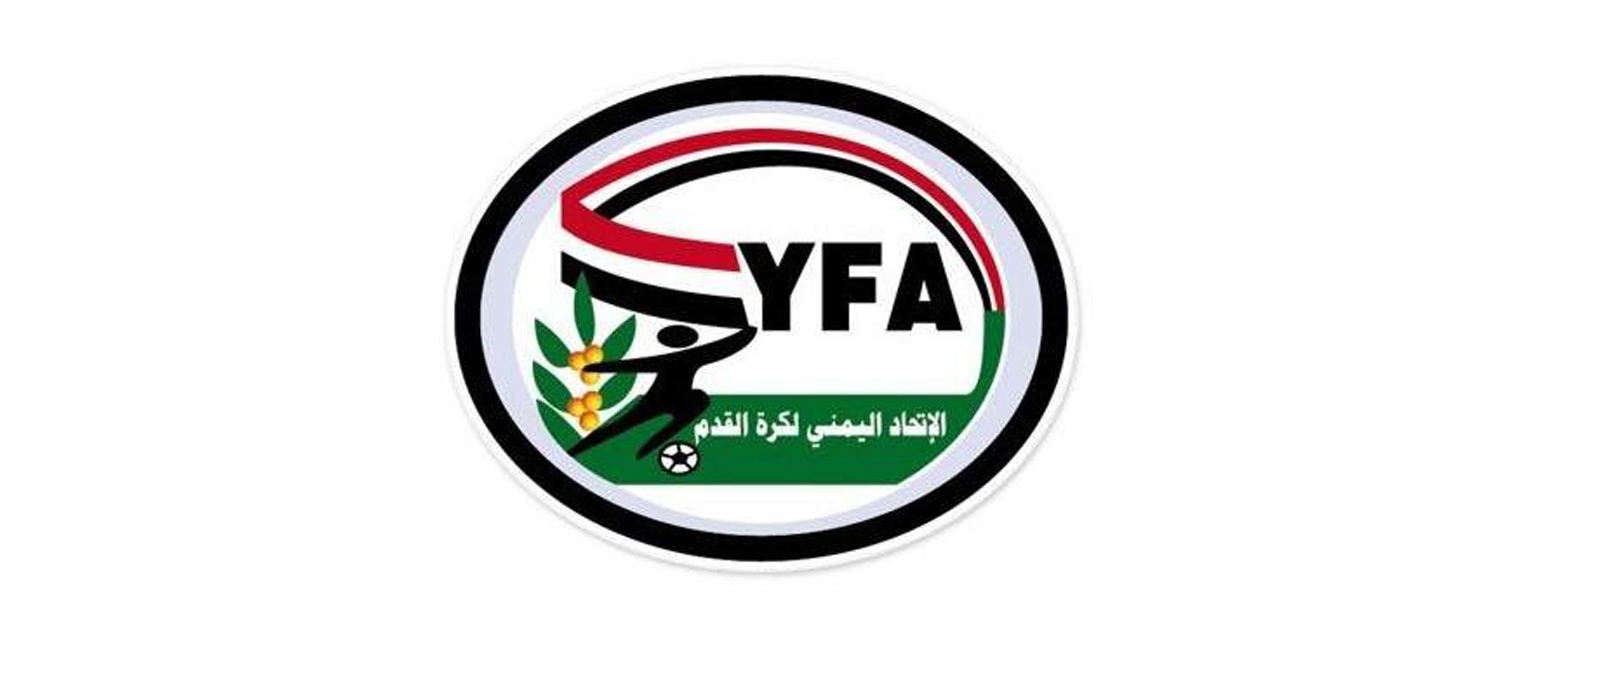 الاتحاد اليمني لكرة القدم يحذر من المشاركة في أي أنشطة رياضية ينظمها كيان "غير شرعي"